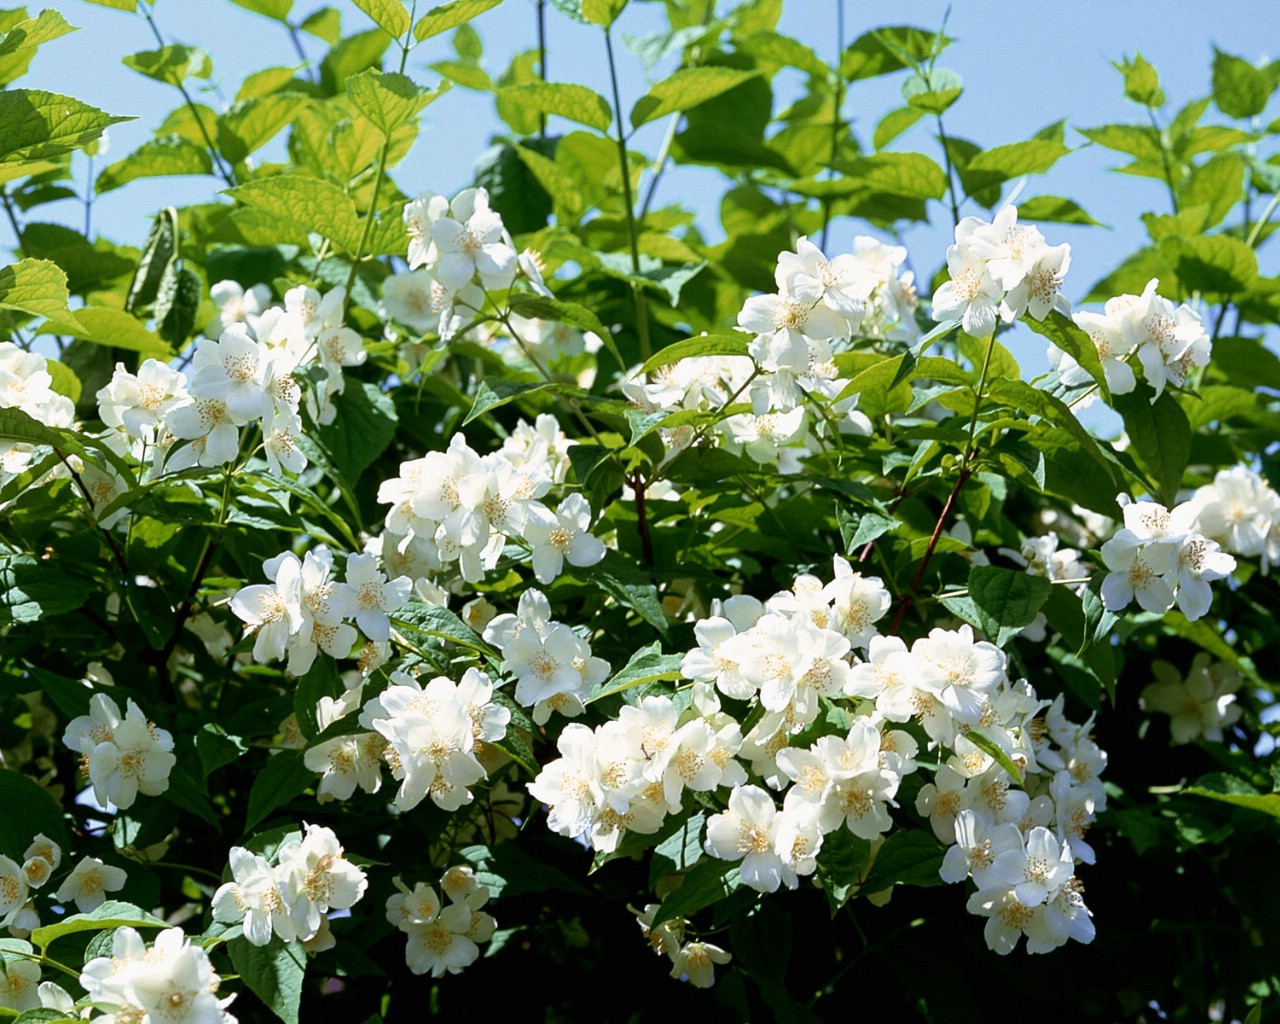 壁纸1280x1024白色花朵 4 20壁纸 白色花朵壁纸 白色花朵图片 白色花朵素材 花卉壁纸 花卉图库 花卉图片素材桌面壁纸